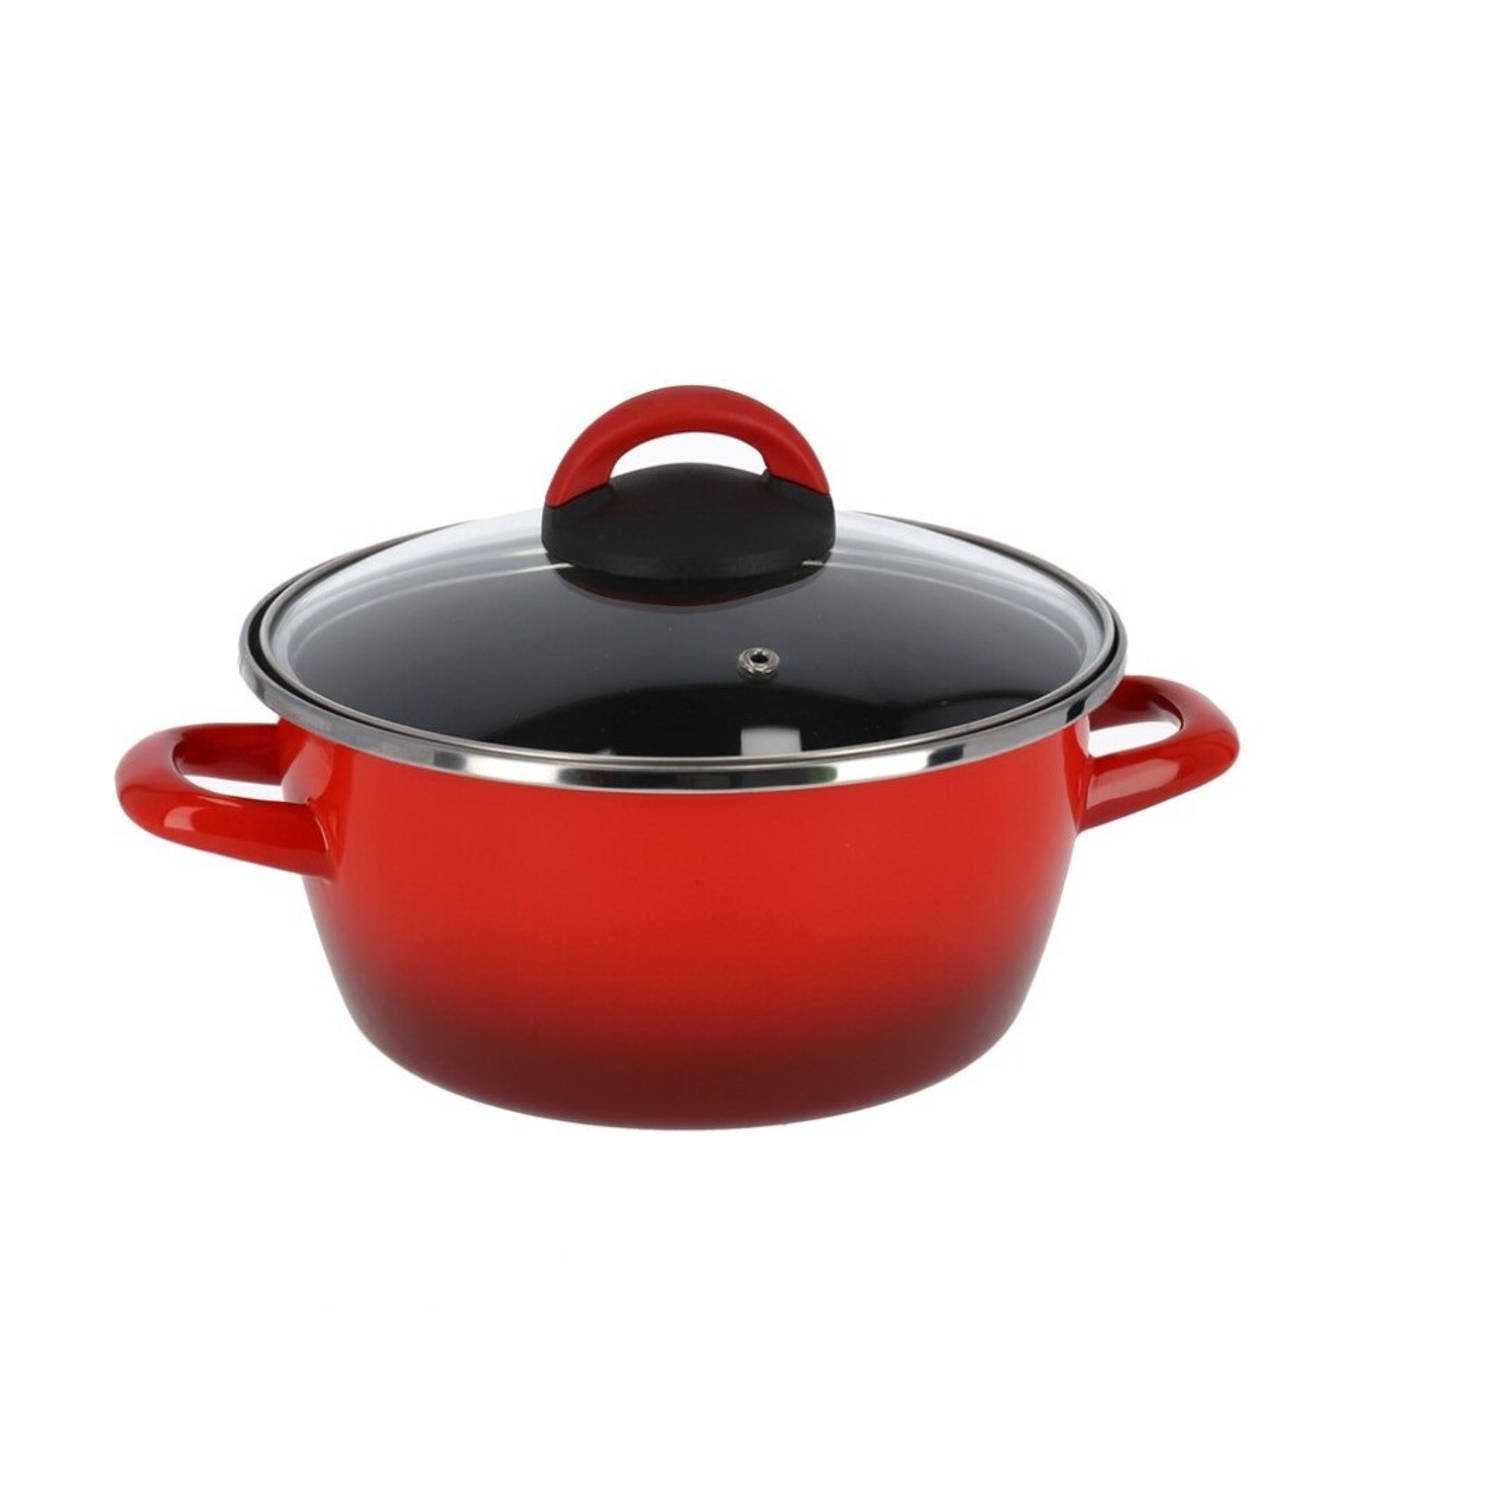 Bezit binding Onschuldig Set van 2x stuks rvs rode kookpan/pan met glazen deksel 16 cm 1 liter -  Kookpannen | Blokker